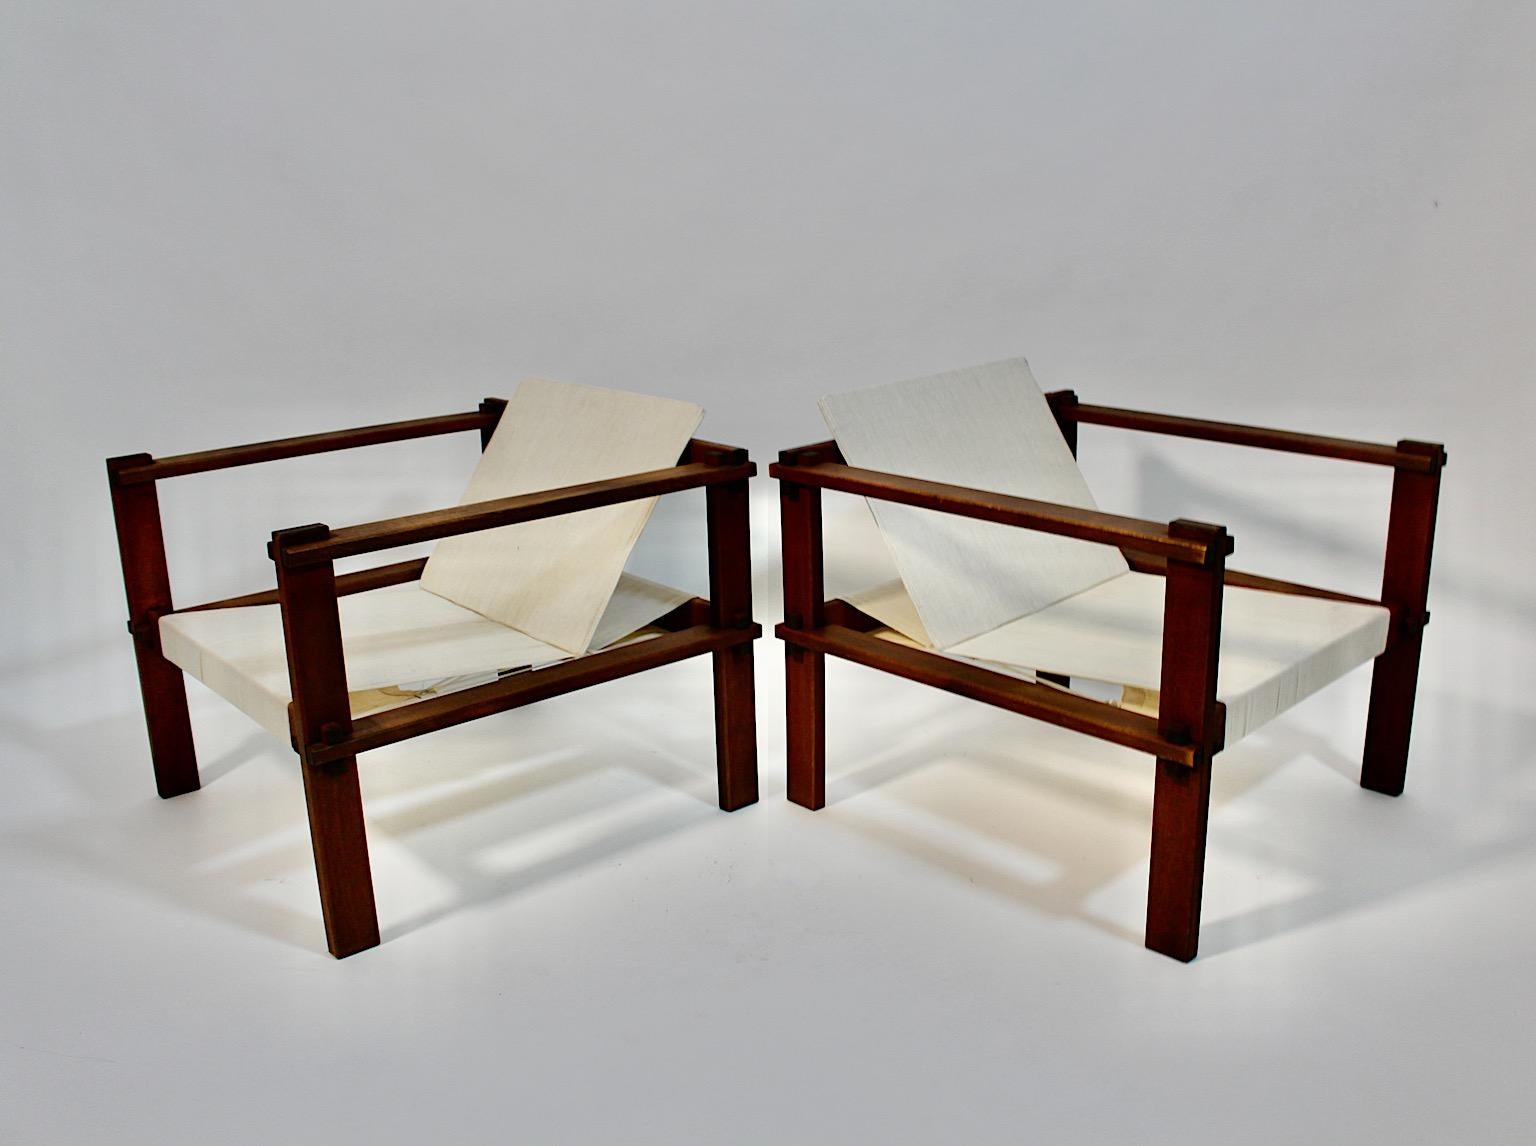 Buche Vintage Lounge Stühle oder Sessel mit hellen Creme Leinwand zugeschrieben Bauhaus in geometrischer Form um 1920 Deutschland.
Ein erstaunliches freistehendes Paar Loungesessel oder Sessel aus Buche, wobei der Sitz und die klappbare Rückenlehne